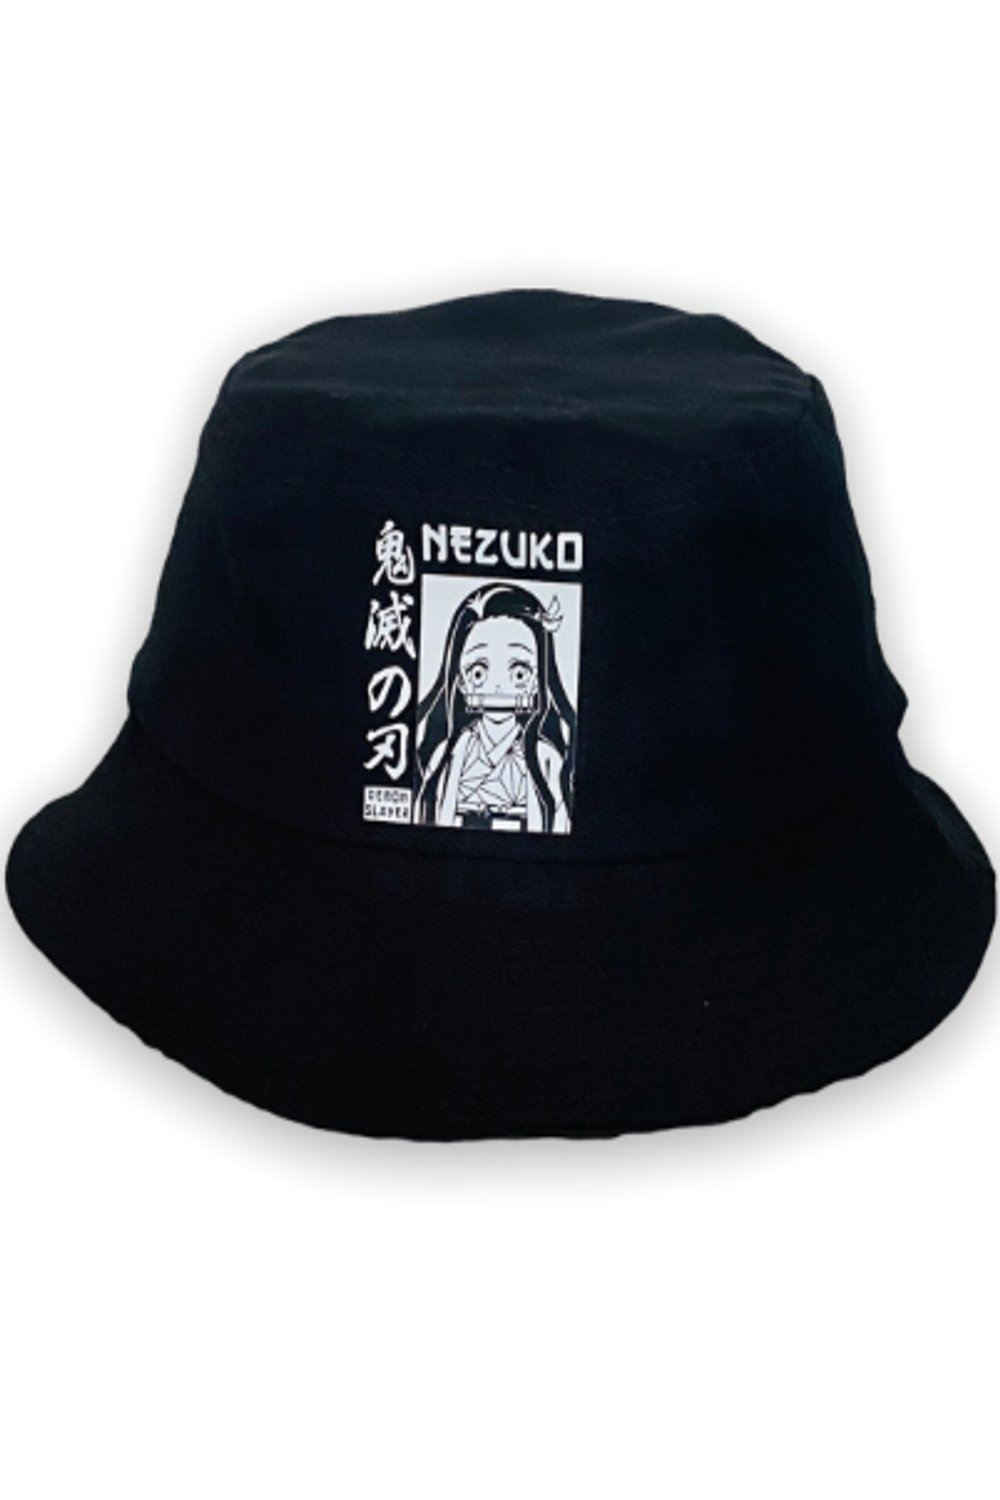 Anime Nezuko Balıkçı Bucket Şapka